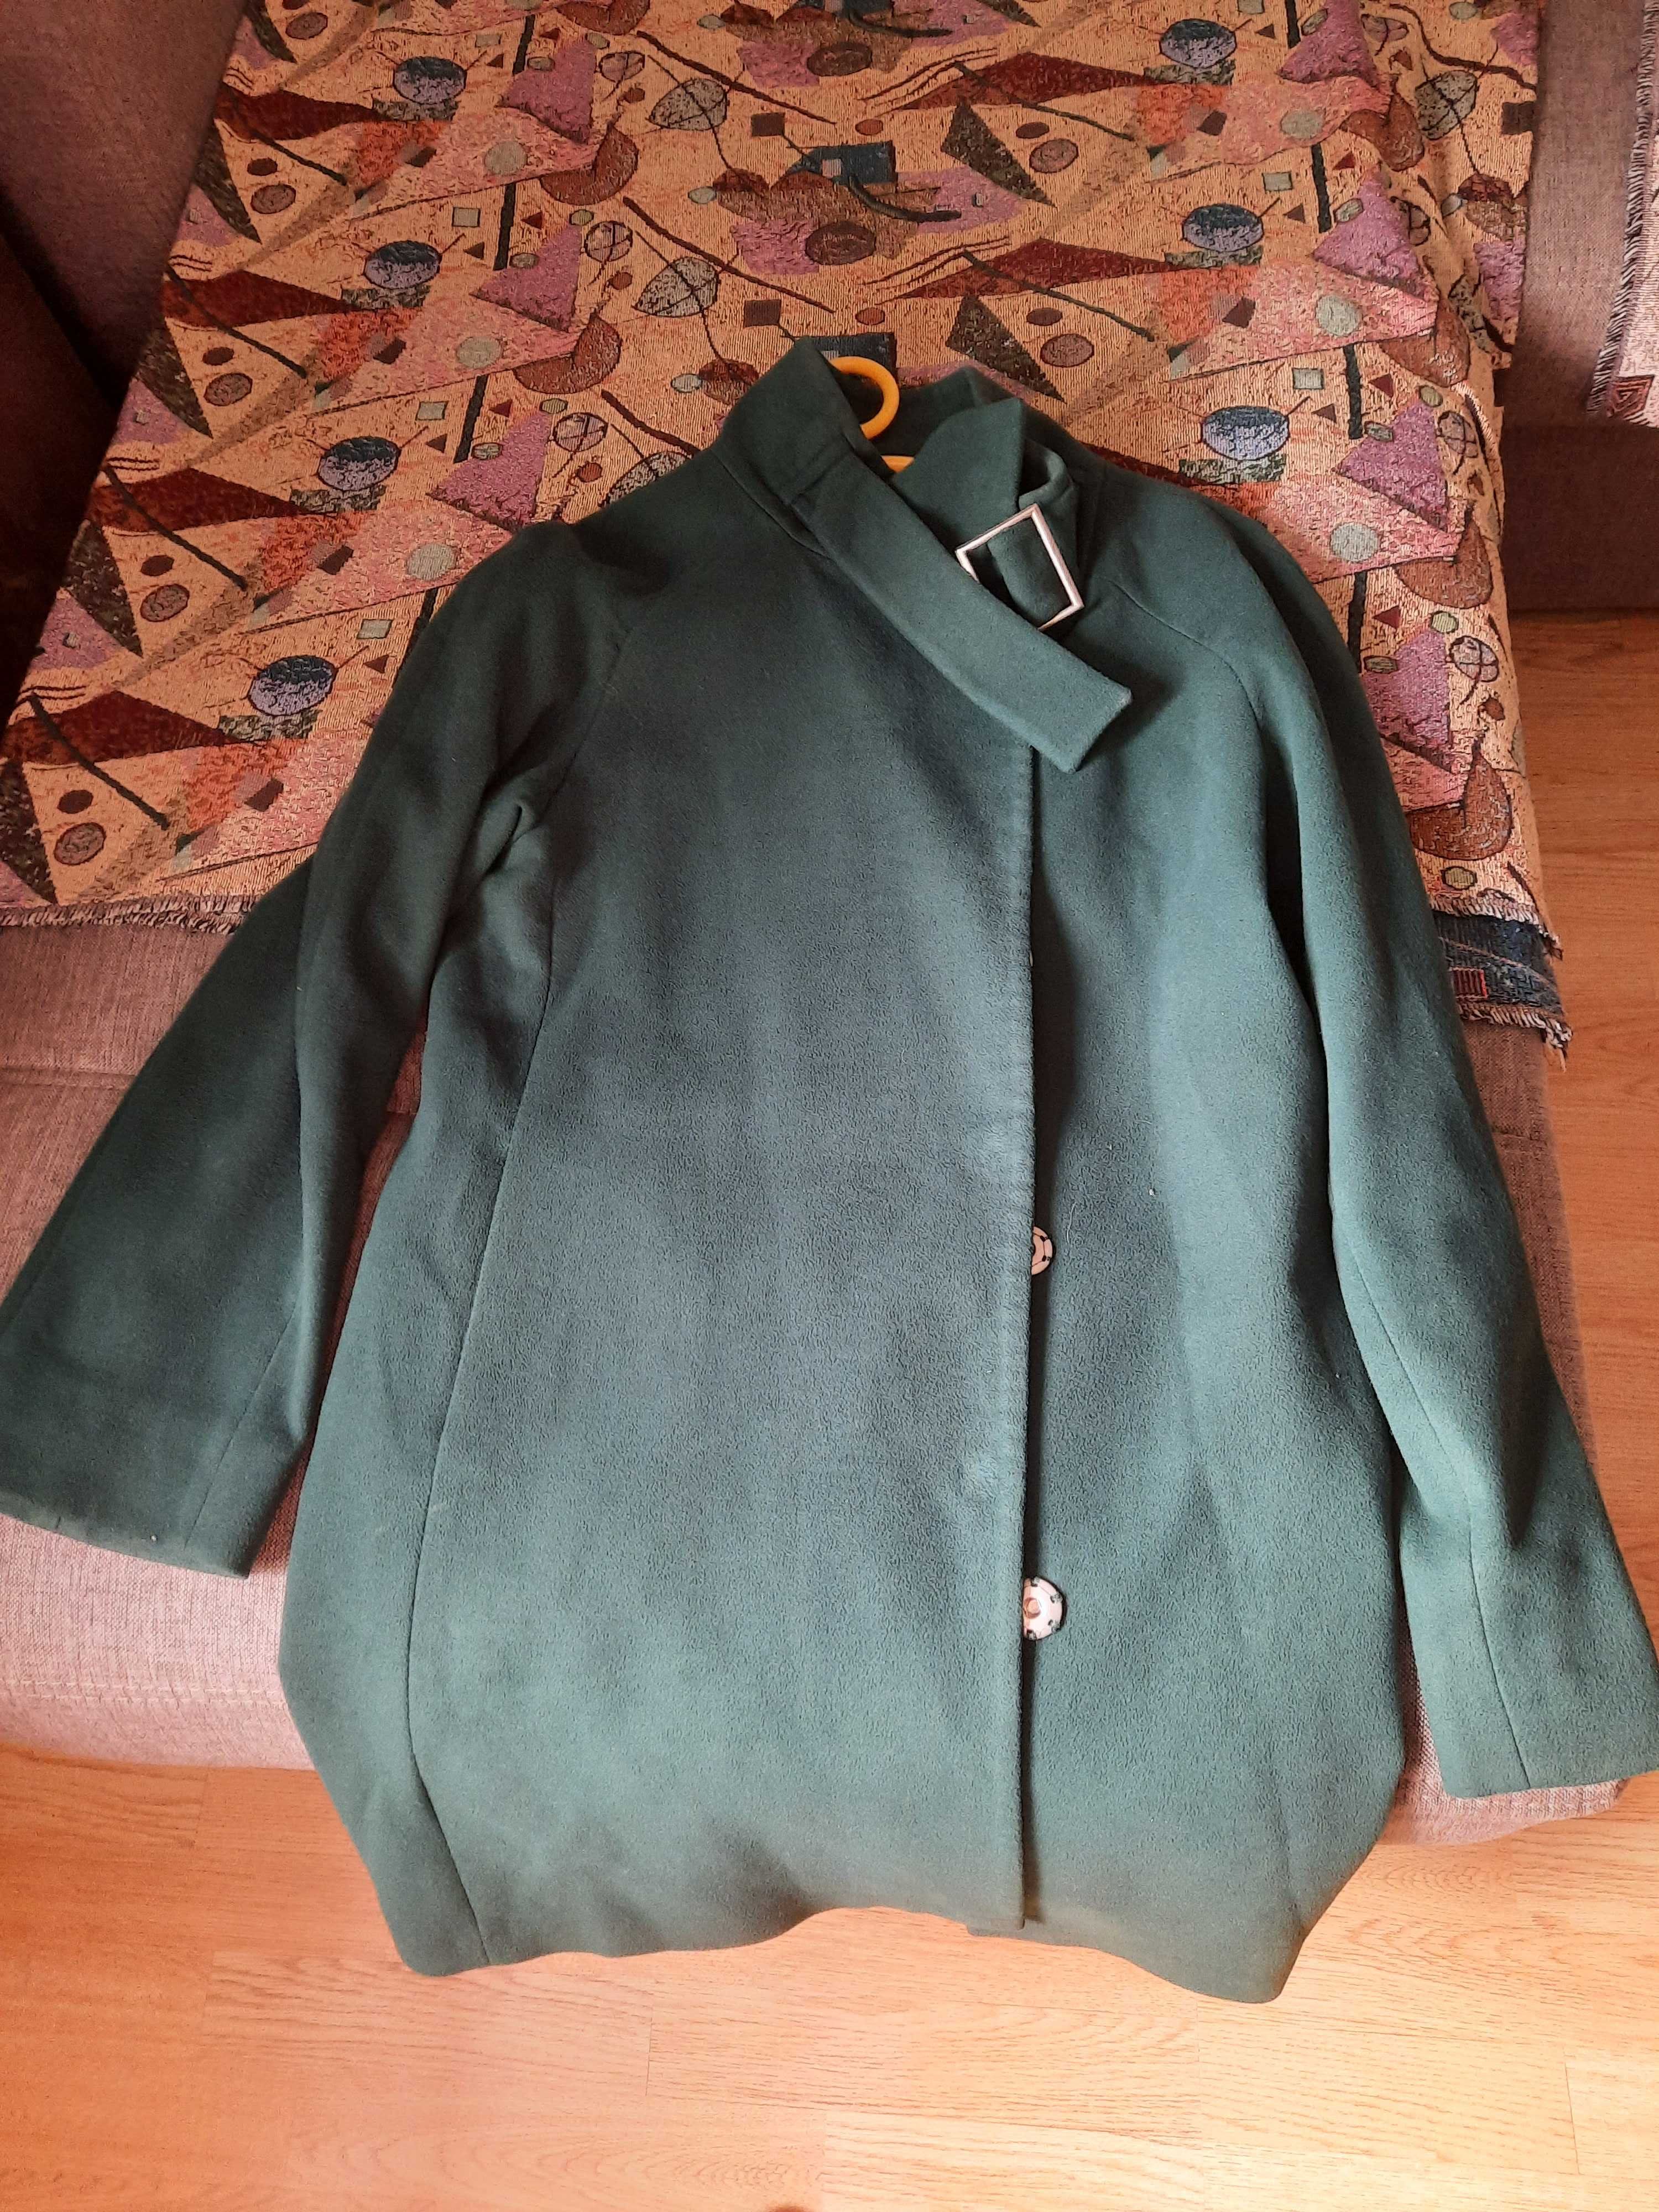 Пальто женское зеленое